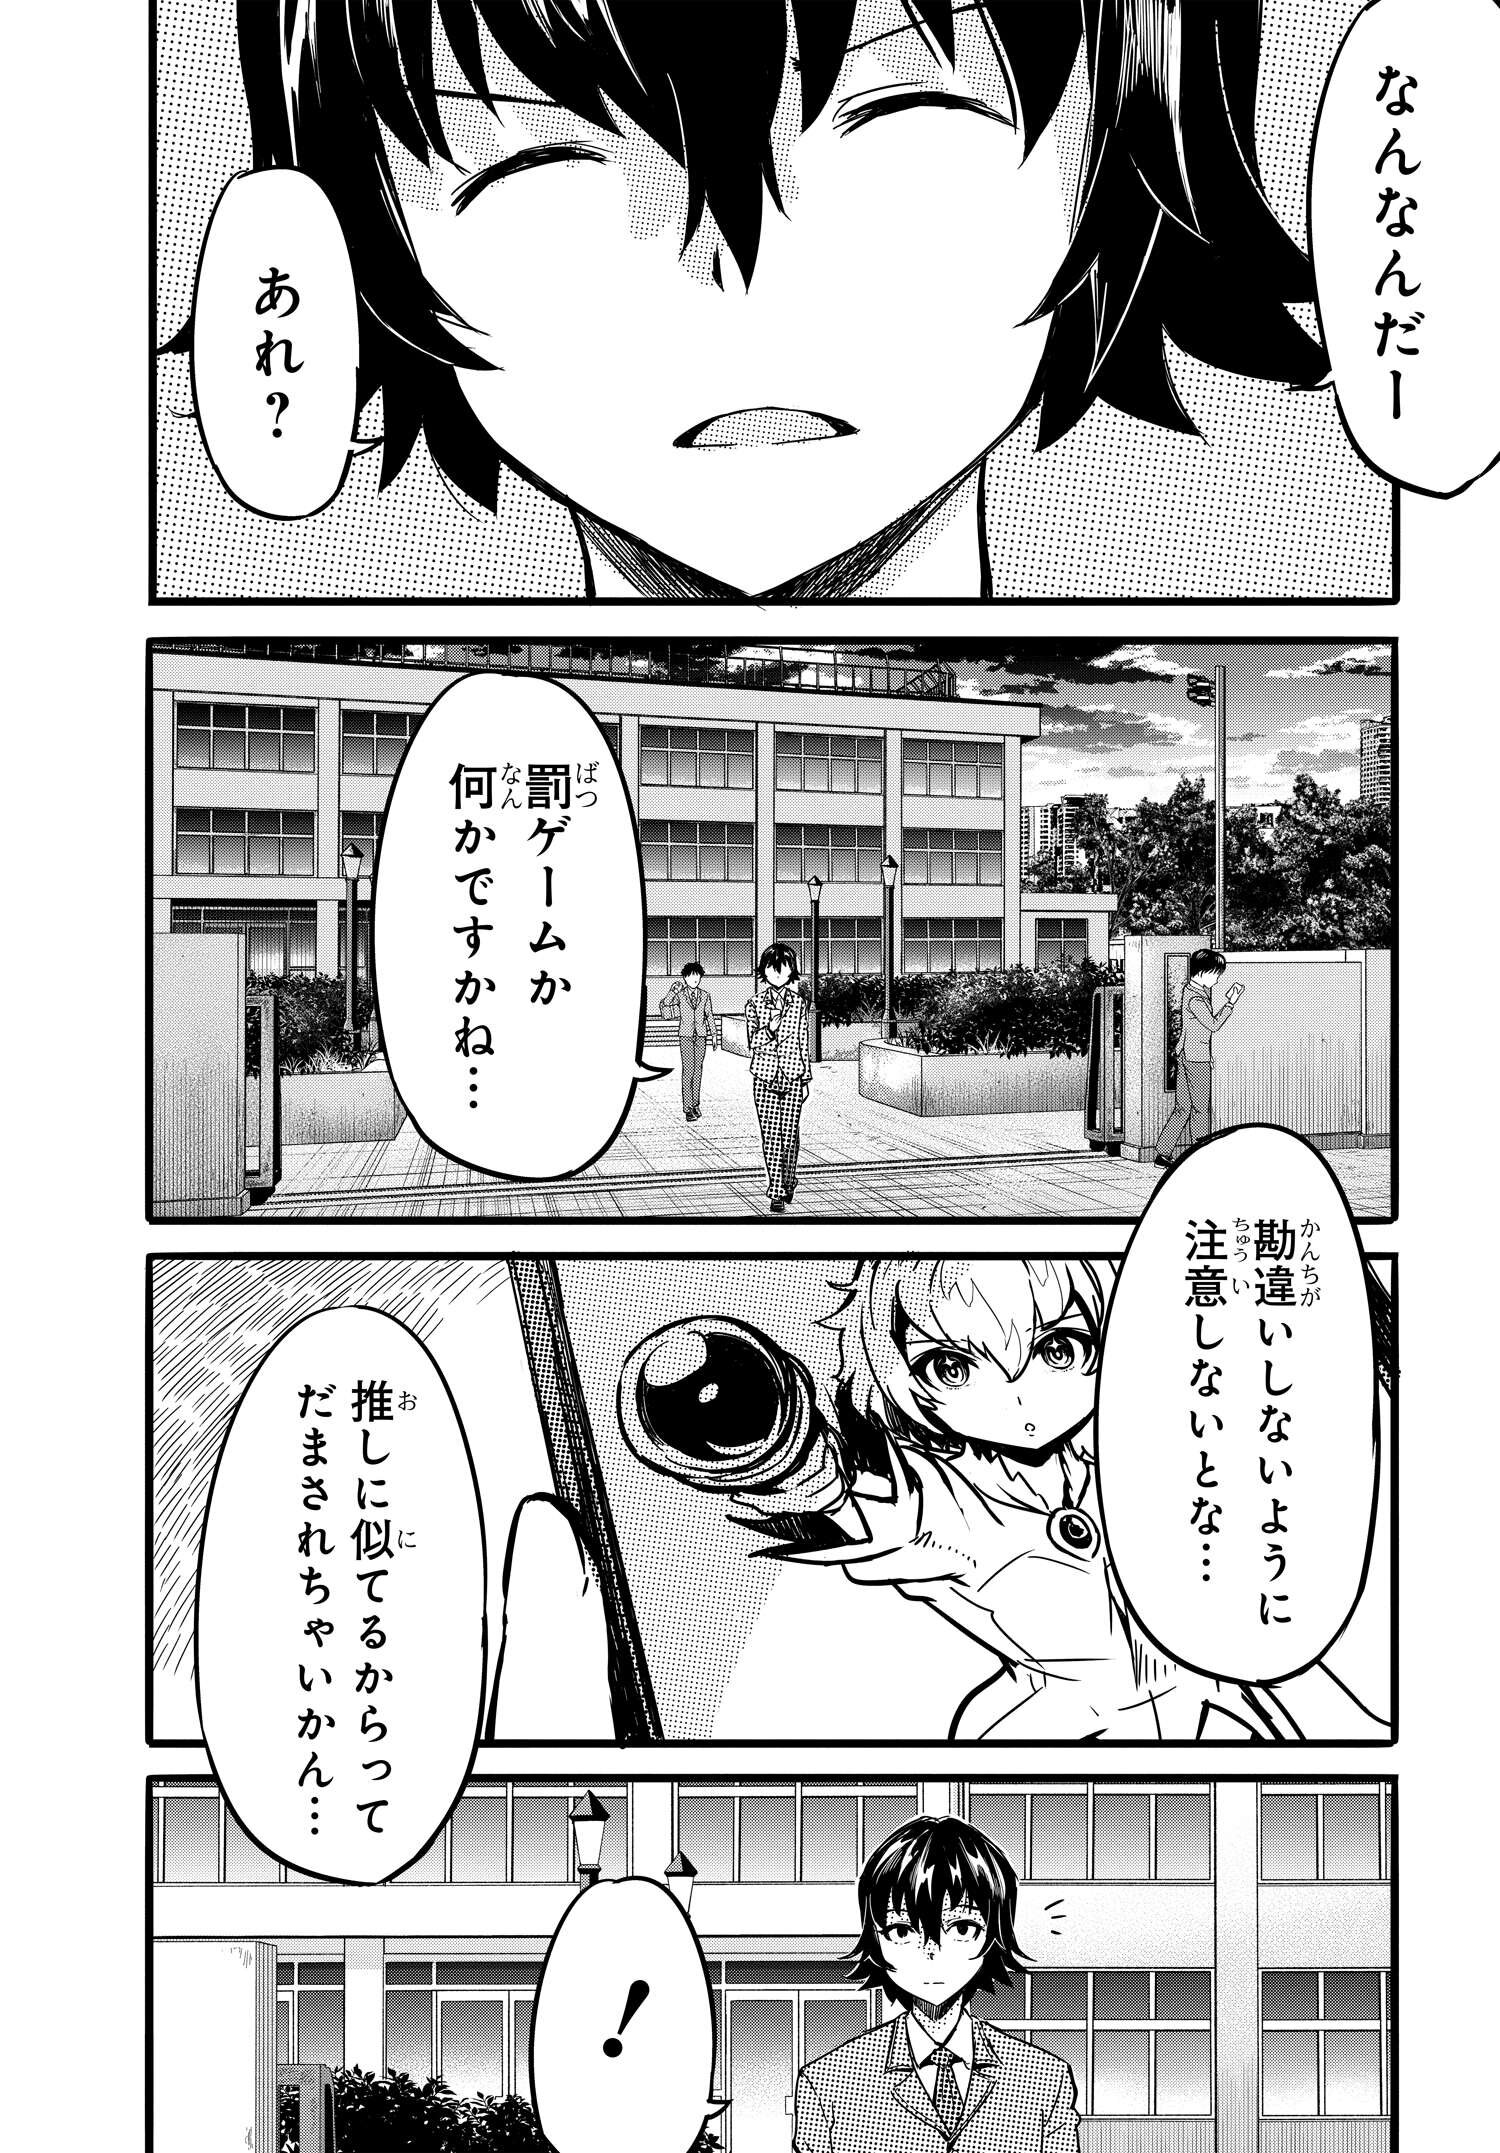 Aru Hi Totsuzen, Gyaru no iinazuke ga Dekita - Chapter 1 - Page 12